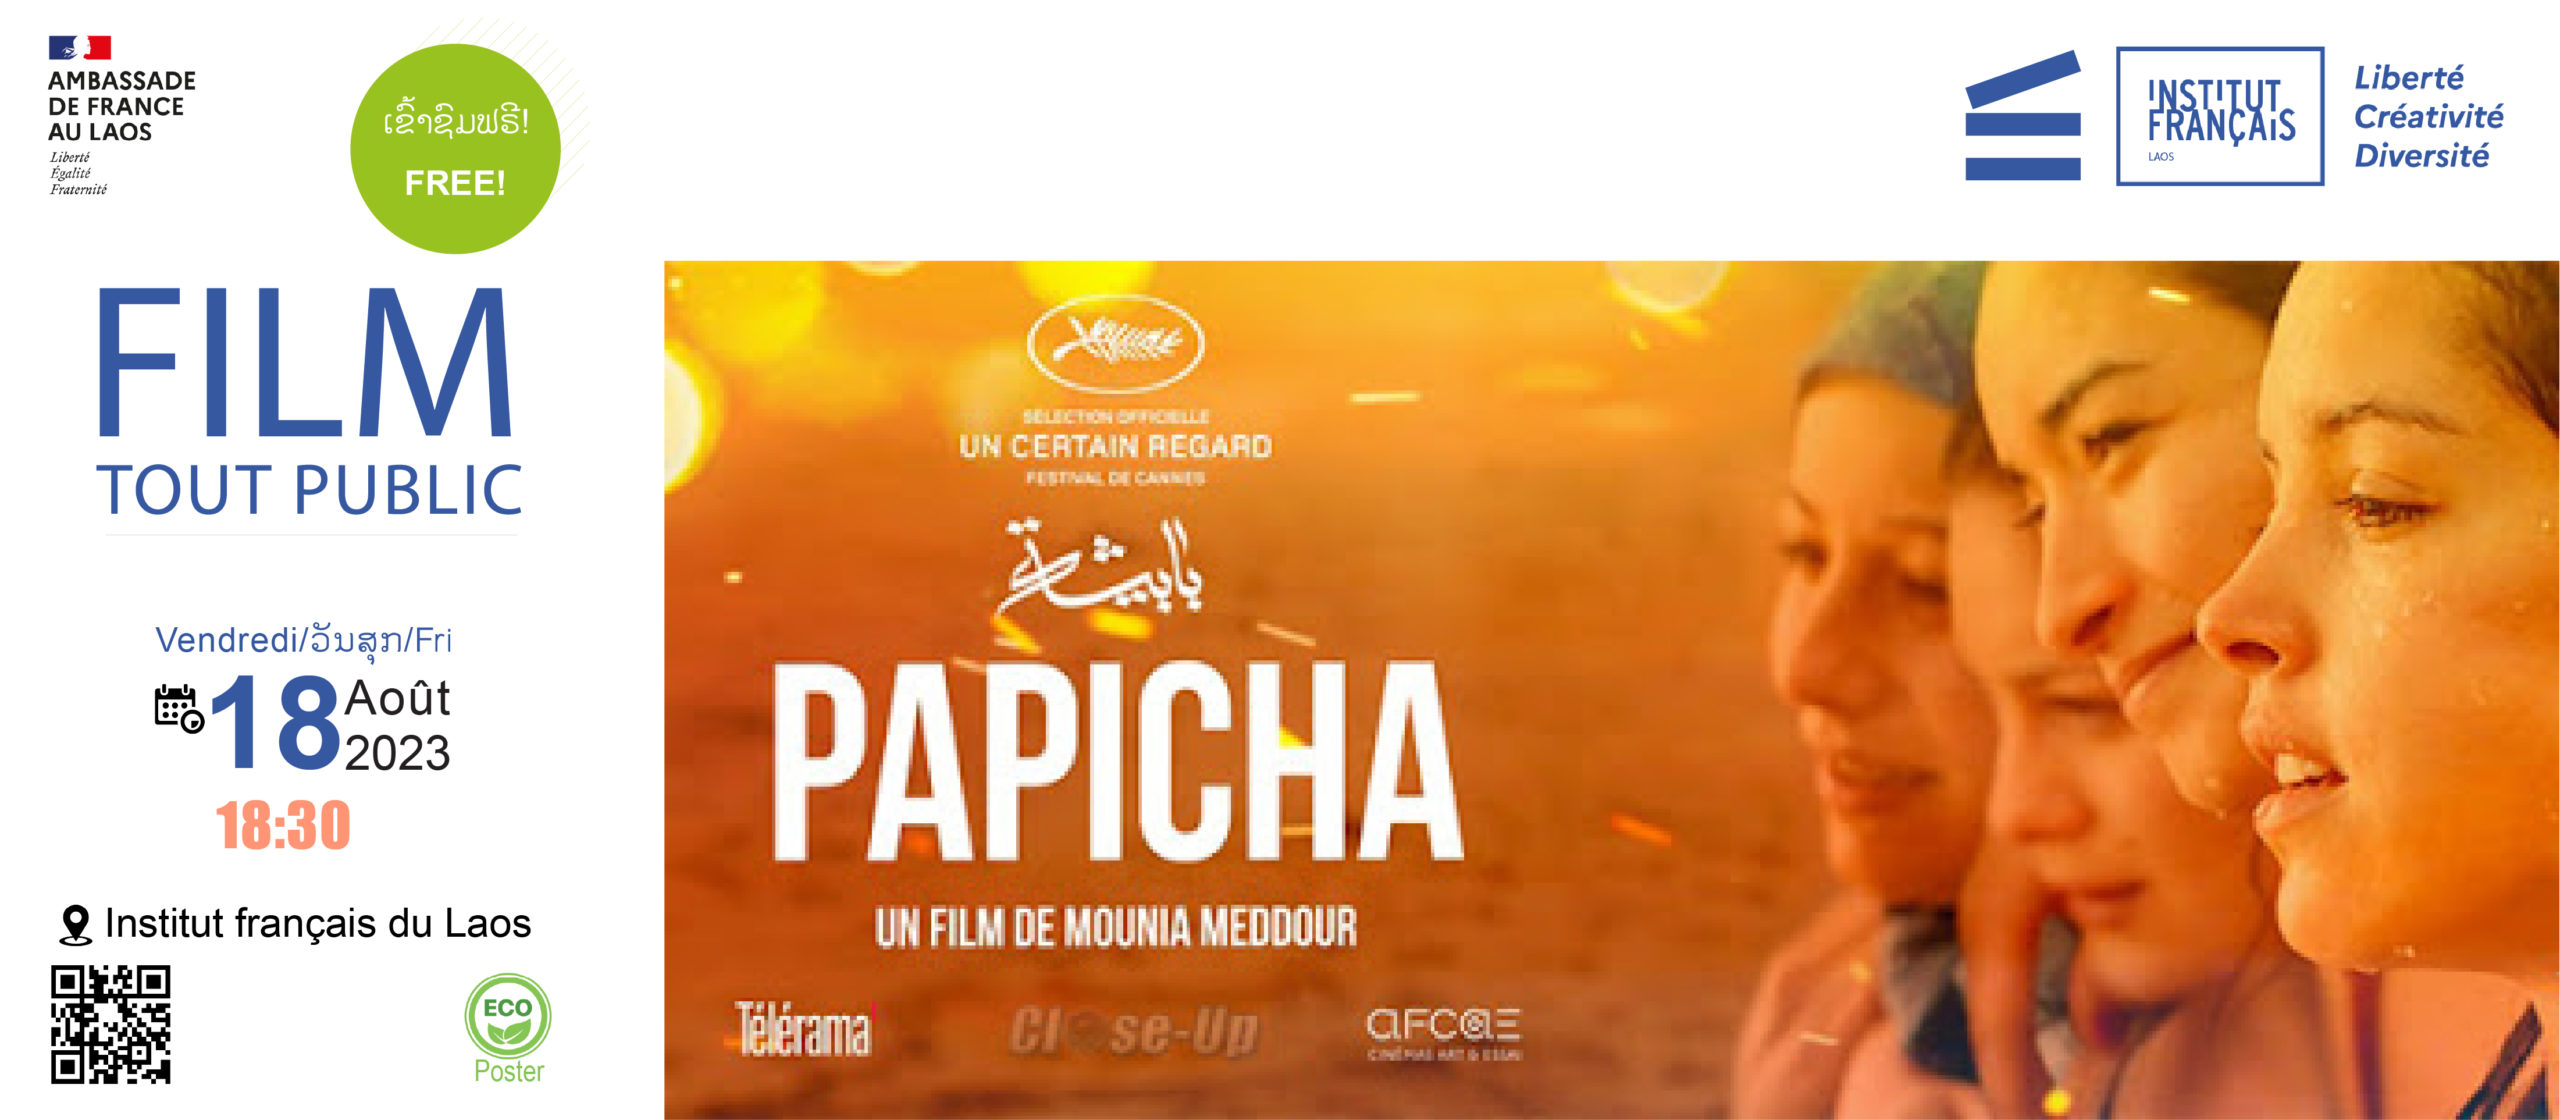 Cinéma - Papicha